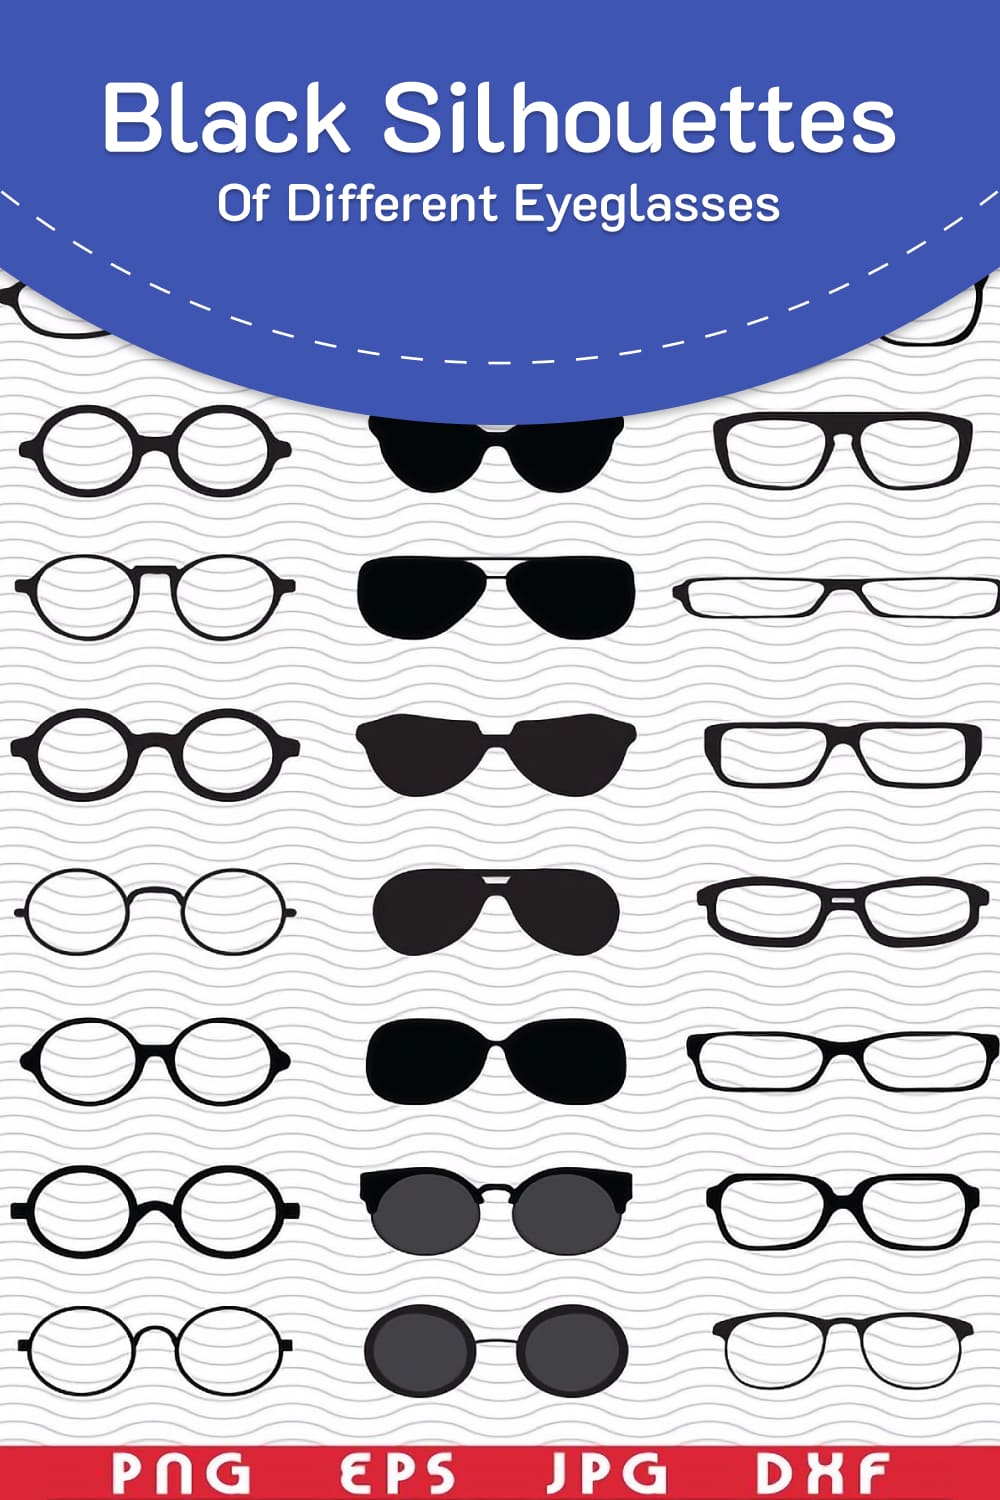 SVG Eyeglasses, Black silhouettes, image for pinterest.